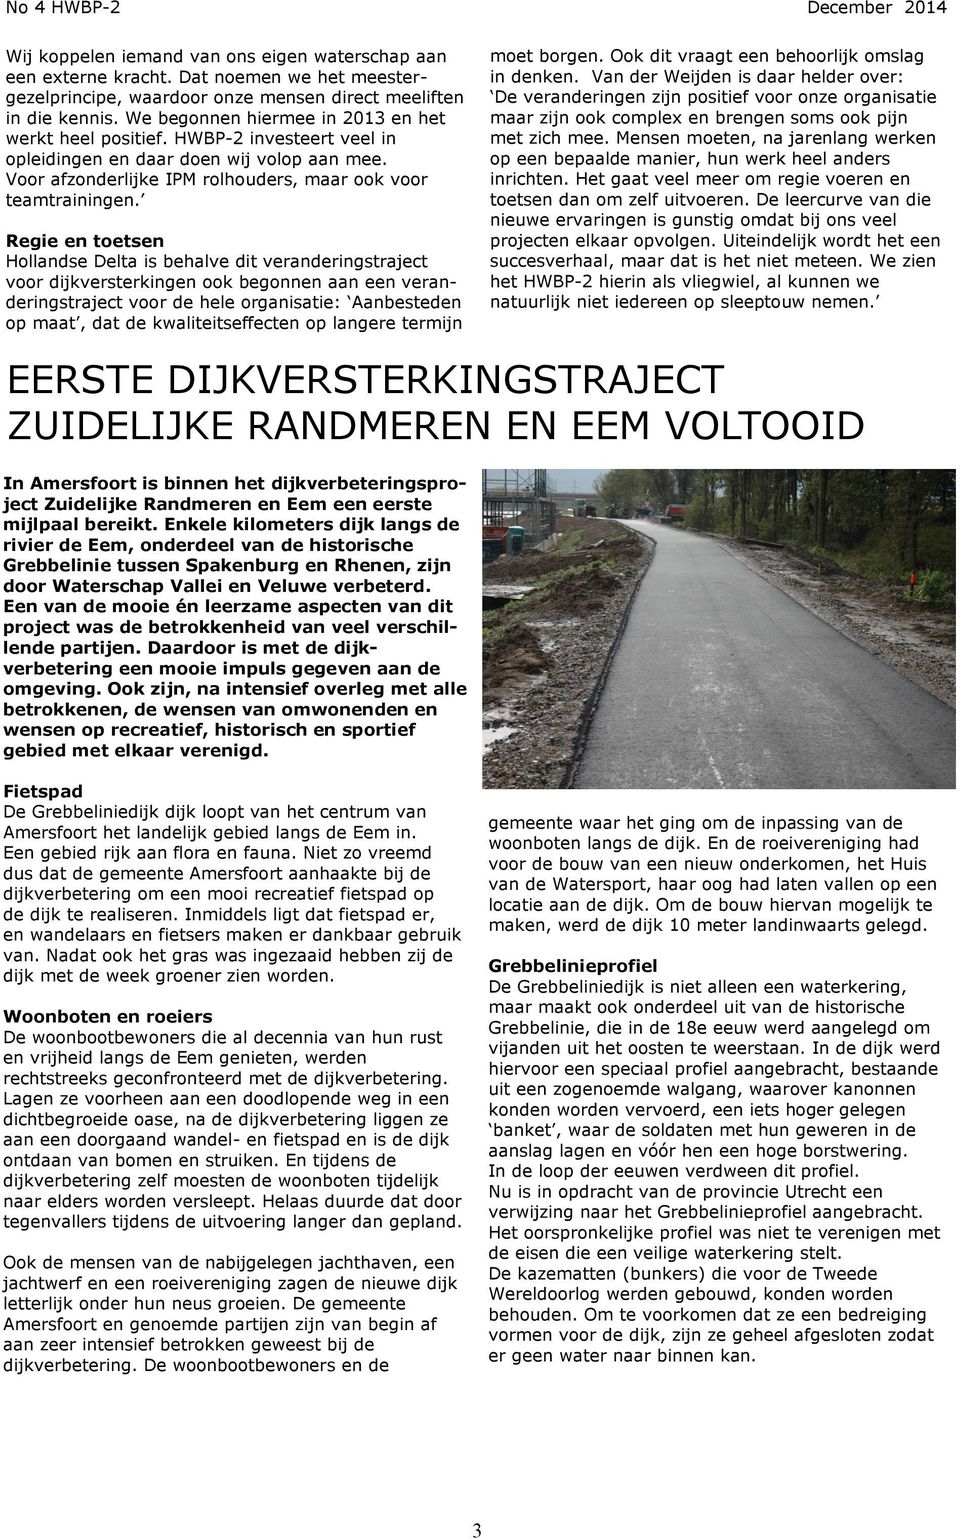 Regie en toetsen Hollandse Delta is behalve dit veranderingstraject voor dijkversterkingen ook begonnen aan een veranderingstraject voor de hele organisatie: Aanbesteden op maat, dat de